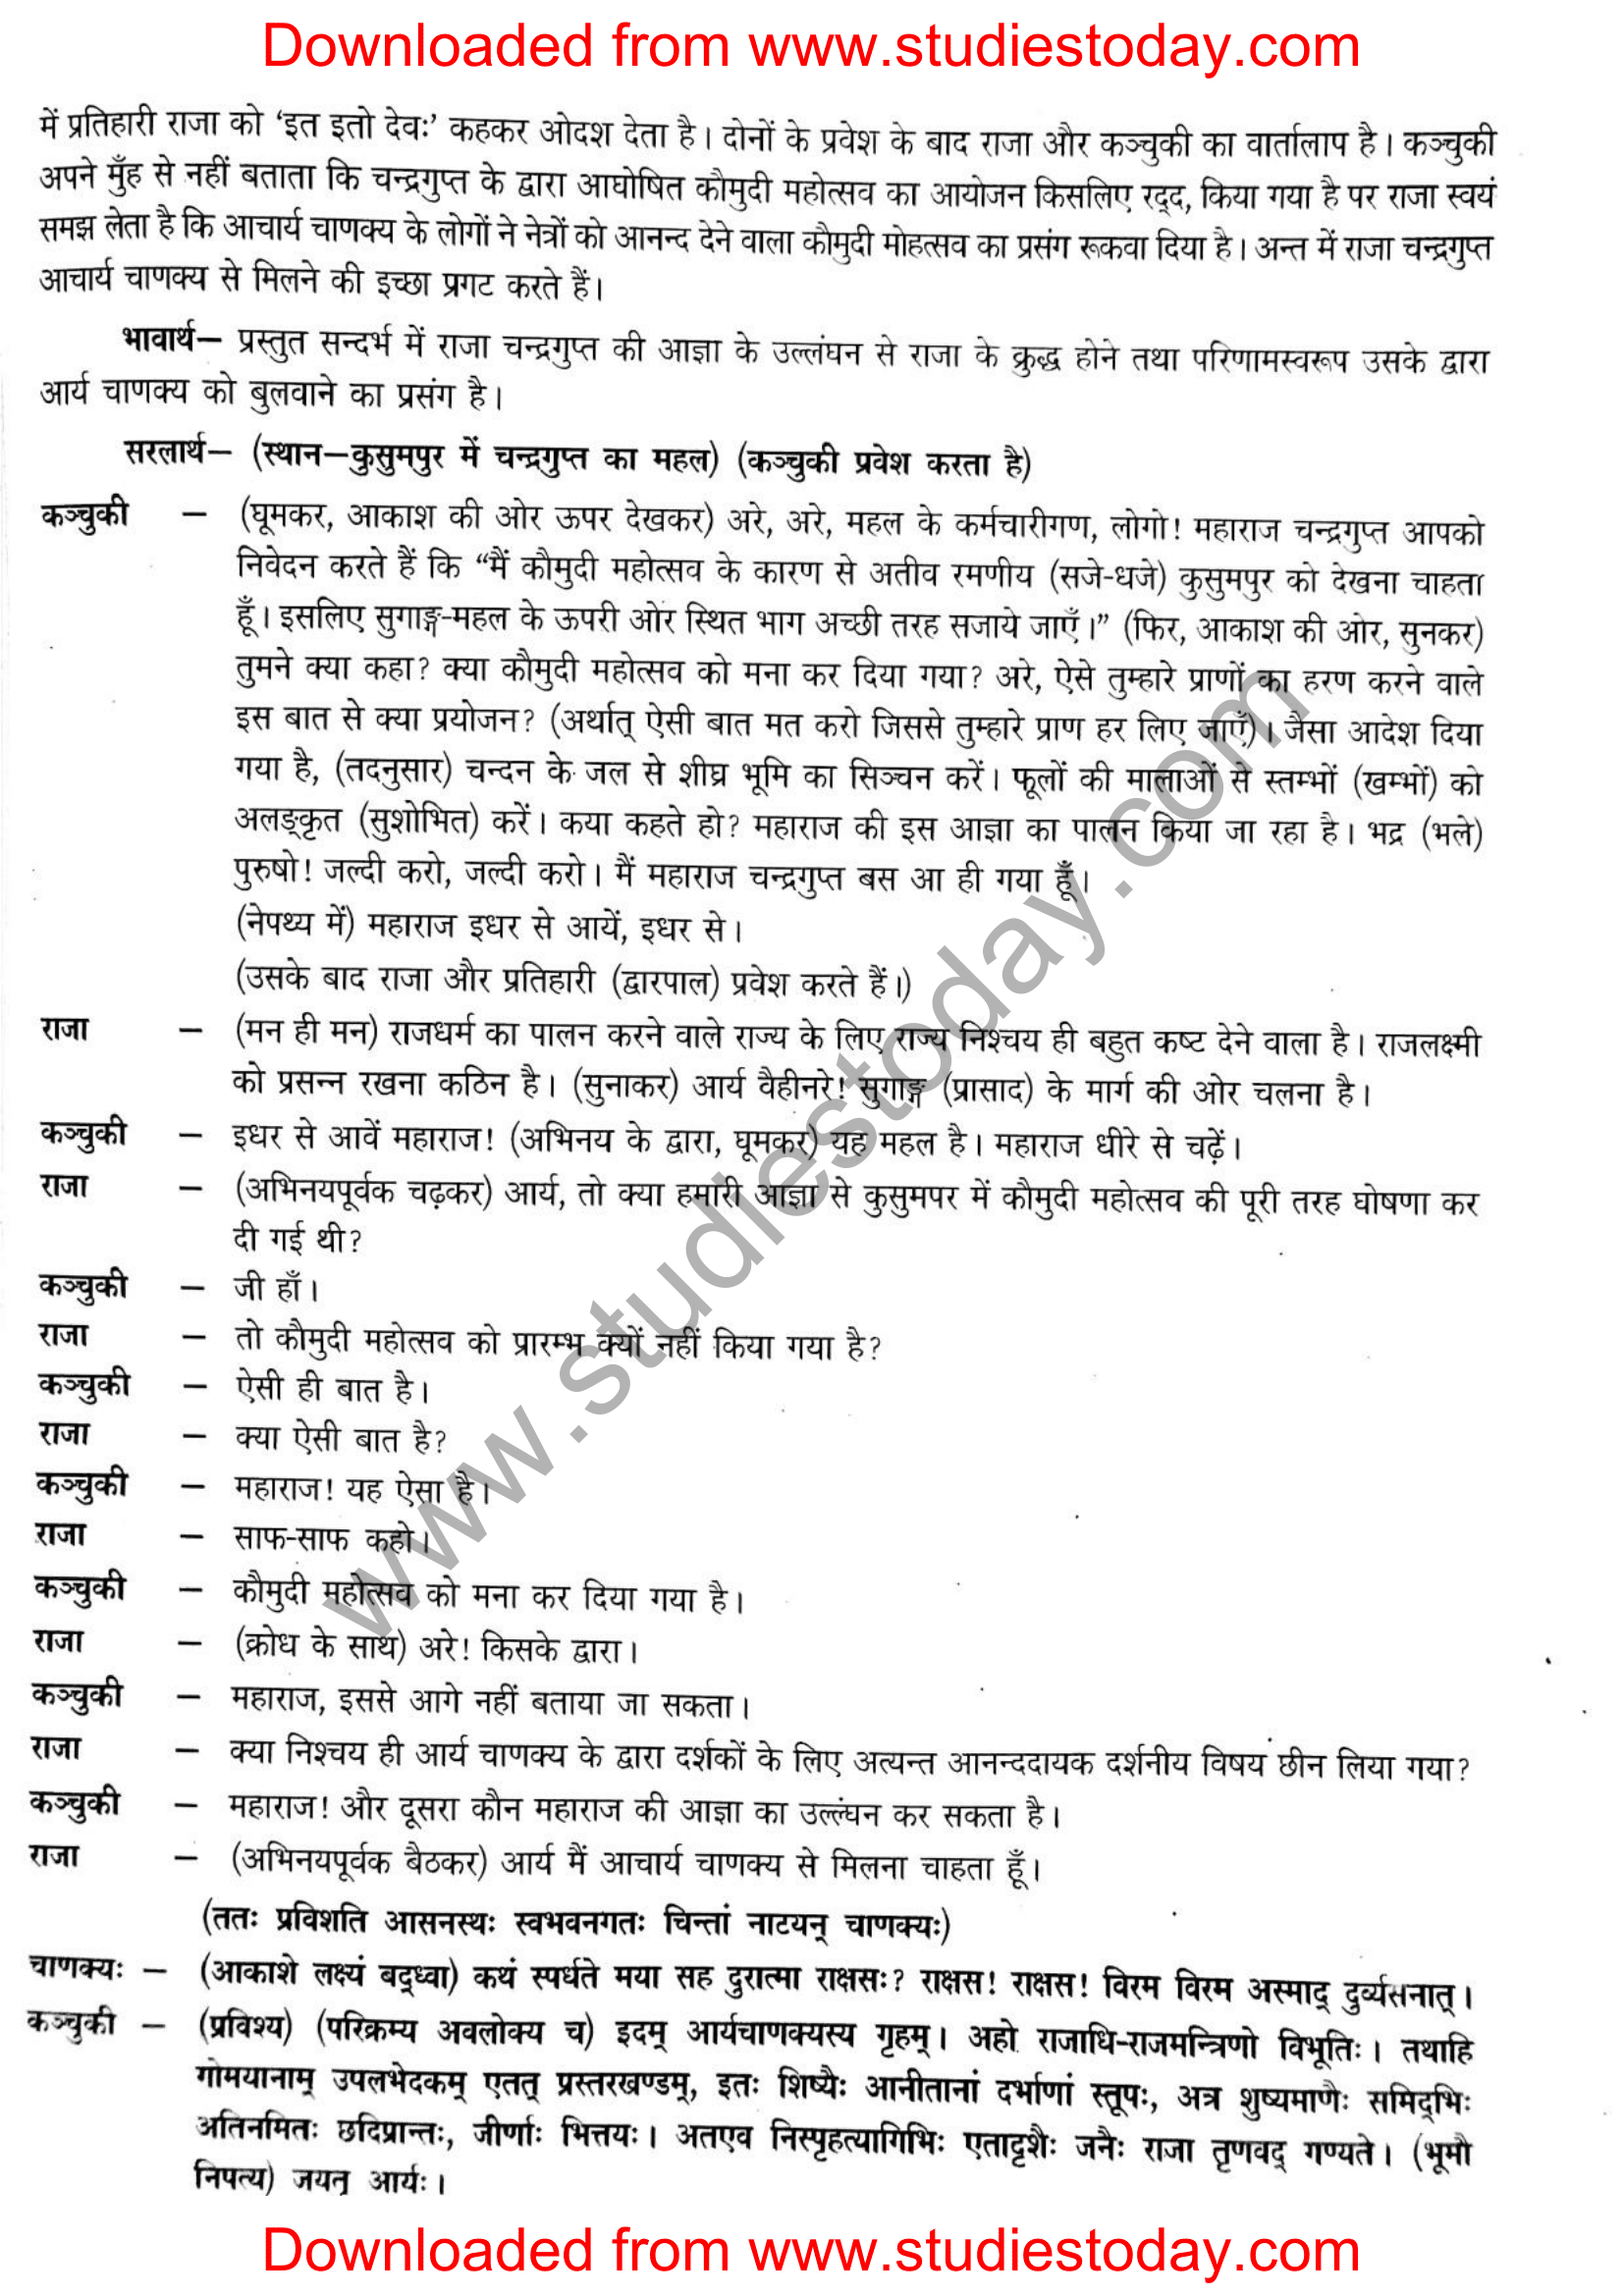 ncert-solutions-class-12-sanskrit-ritikia-chapter-3-03